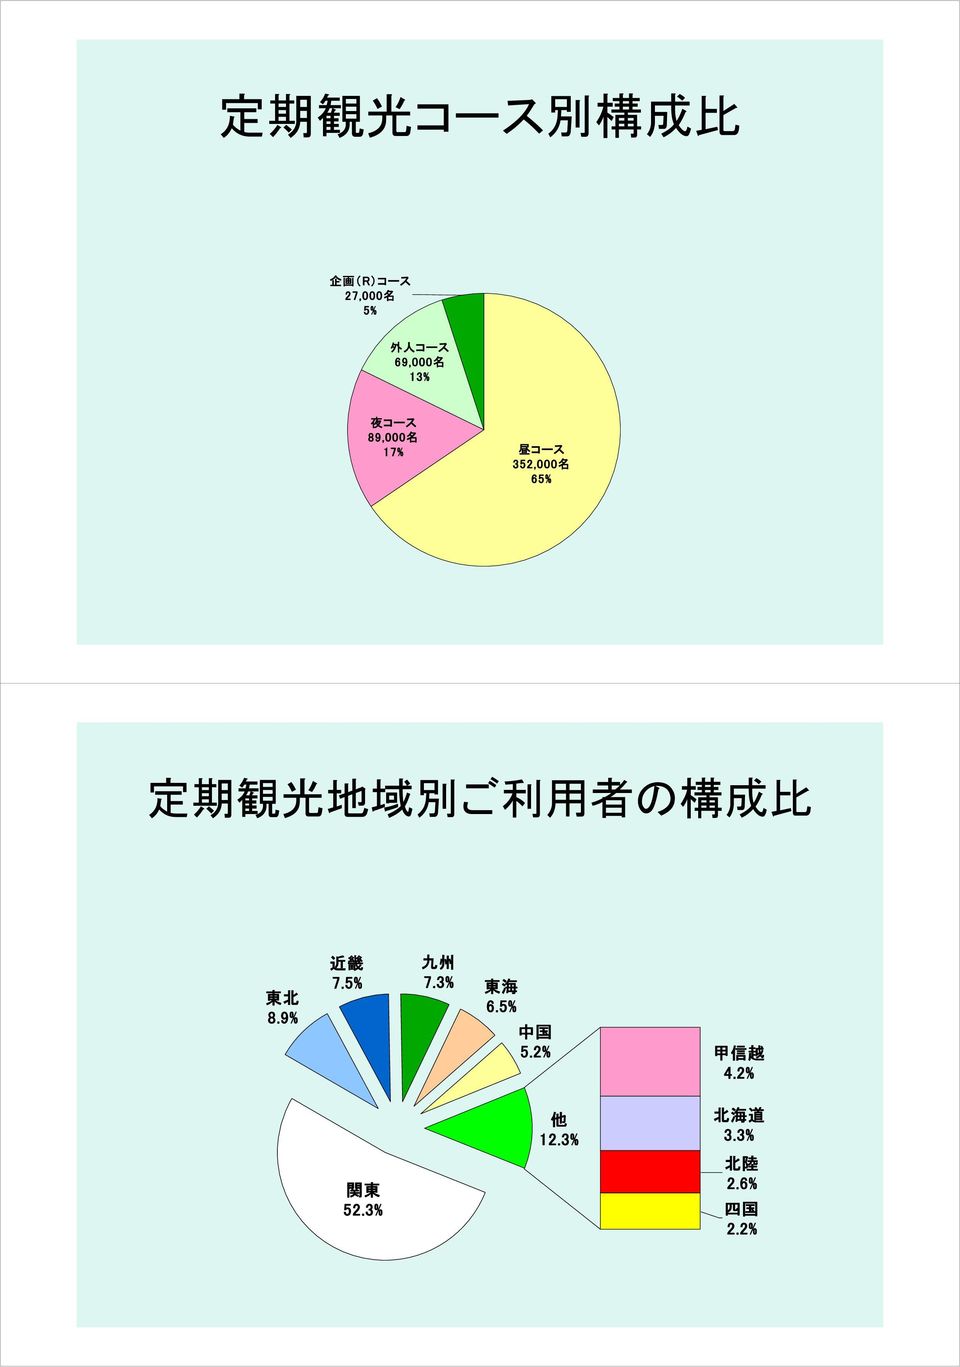 用 者 の 構 成 比 東 北 8.9% 近 畿 7.5% 九 州 7.3% 東 海 6.5% 中 国 5.